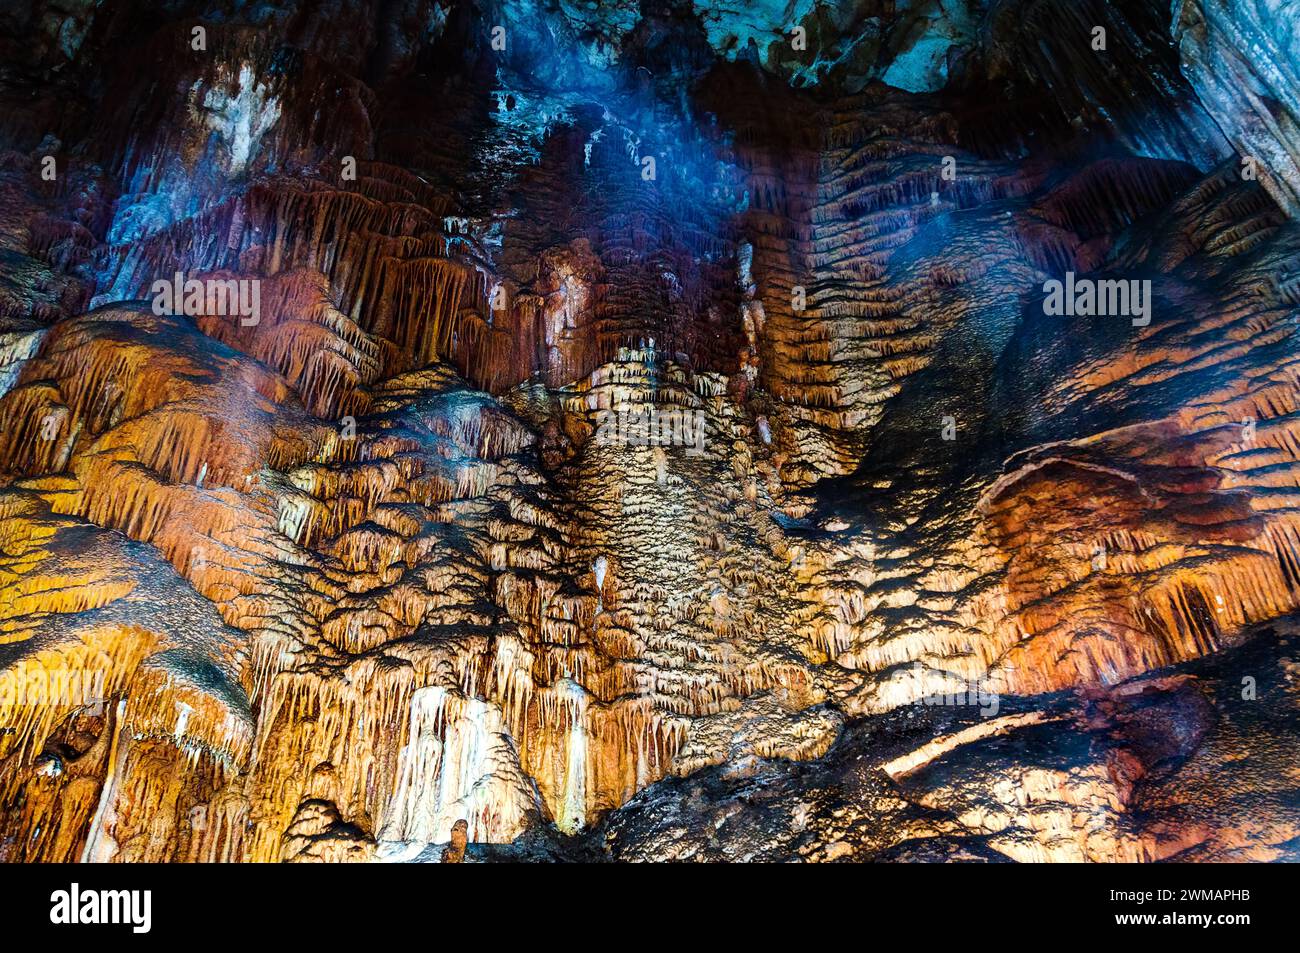 Crimea, Ucraina. Stalattiti, stalagmiti sulle pareti della grotta Emine-Bair-Khosar. Modello per la progettazione. Nitidezza selettiva. Periodo estivo. Foto Stock